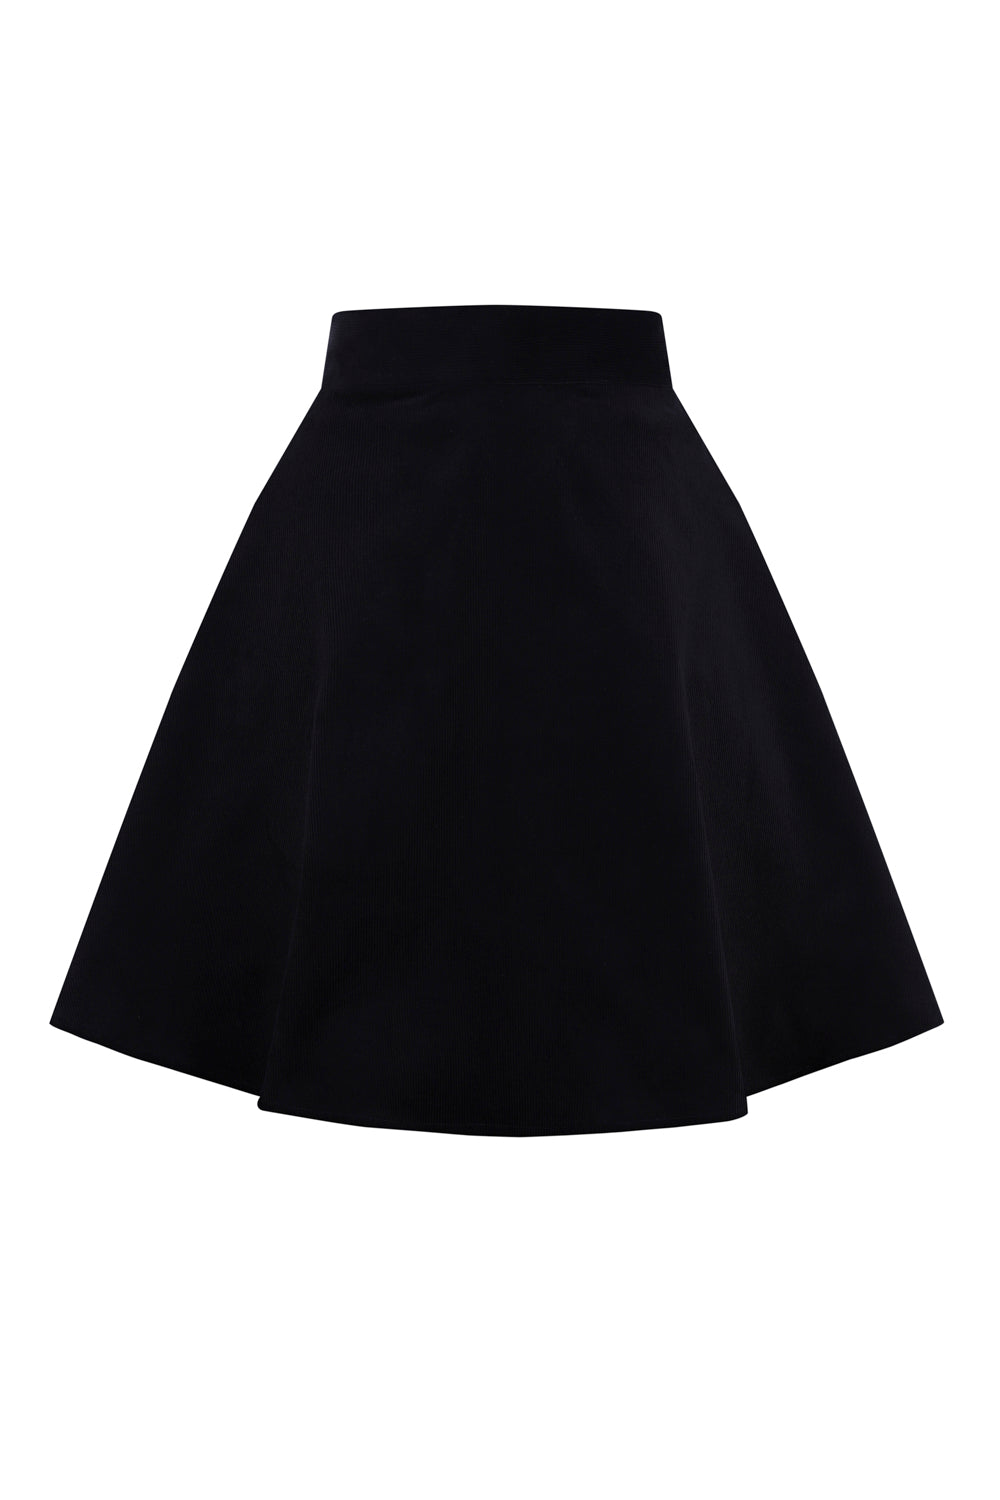 Wonder Years Mini Skirt